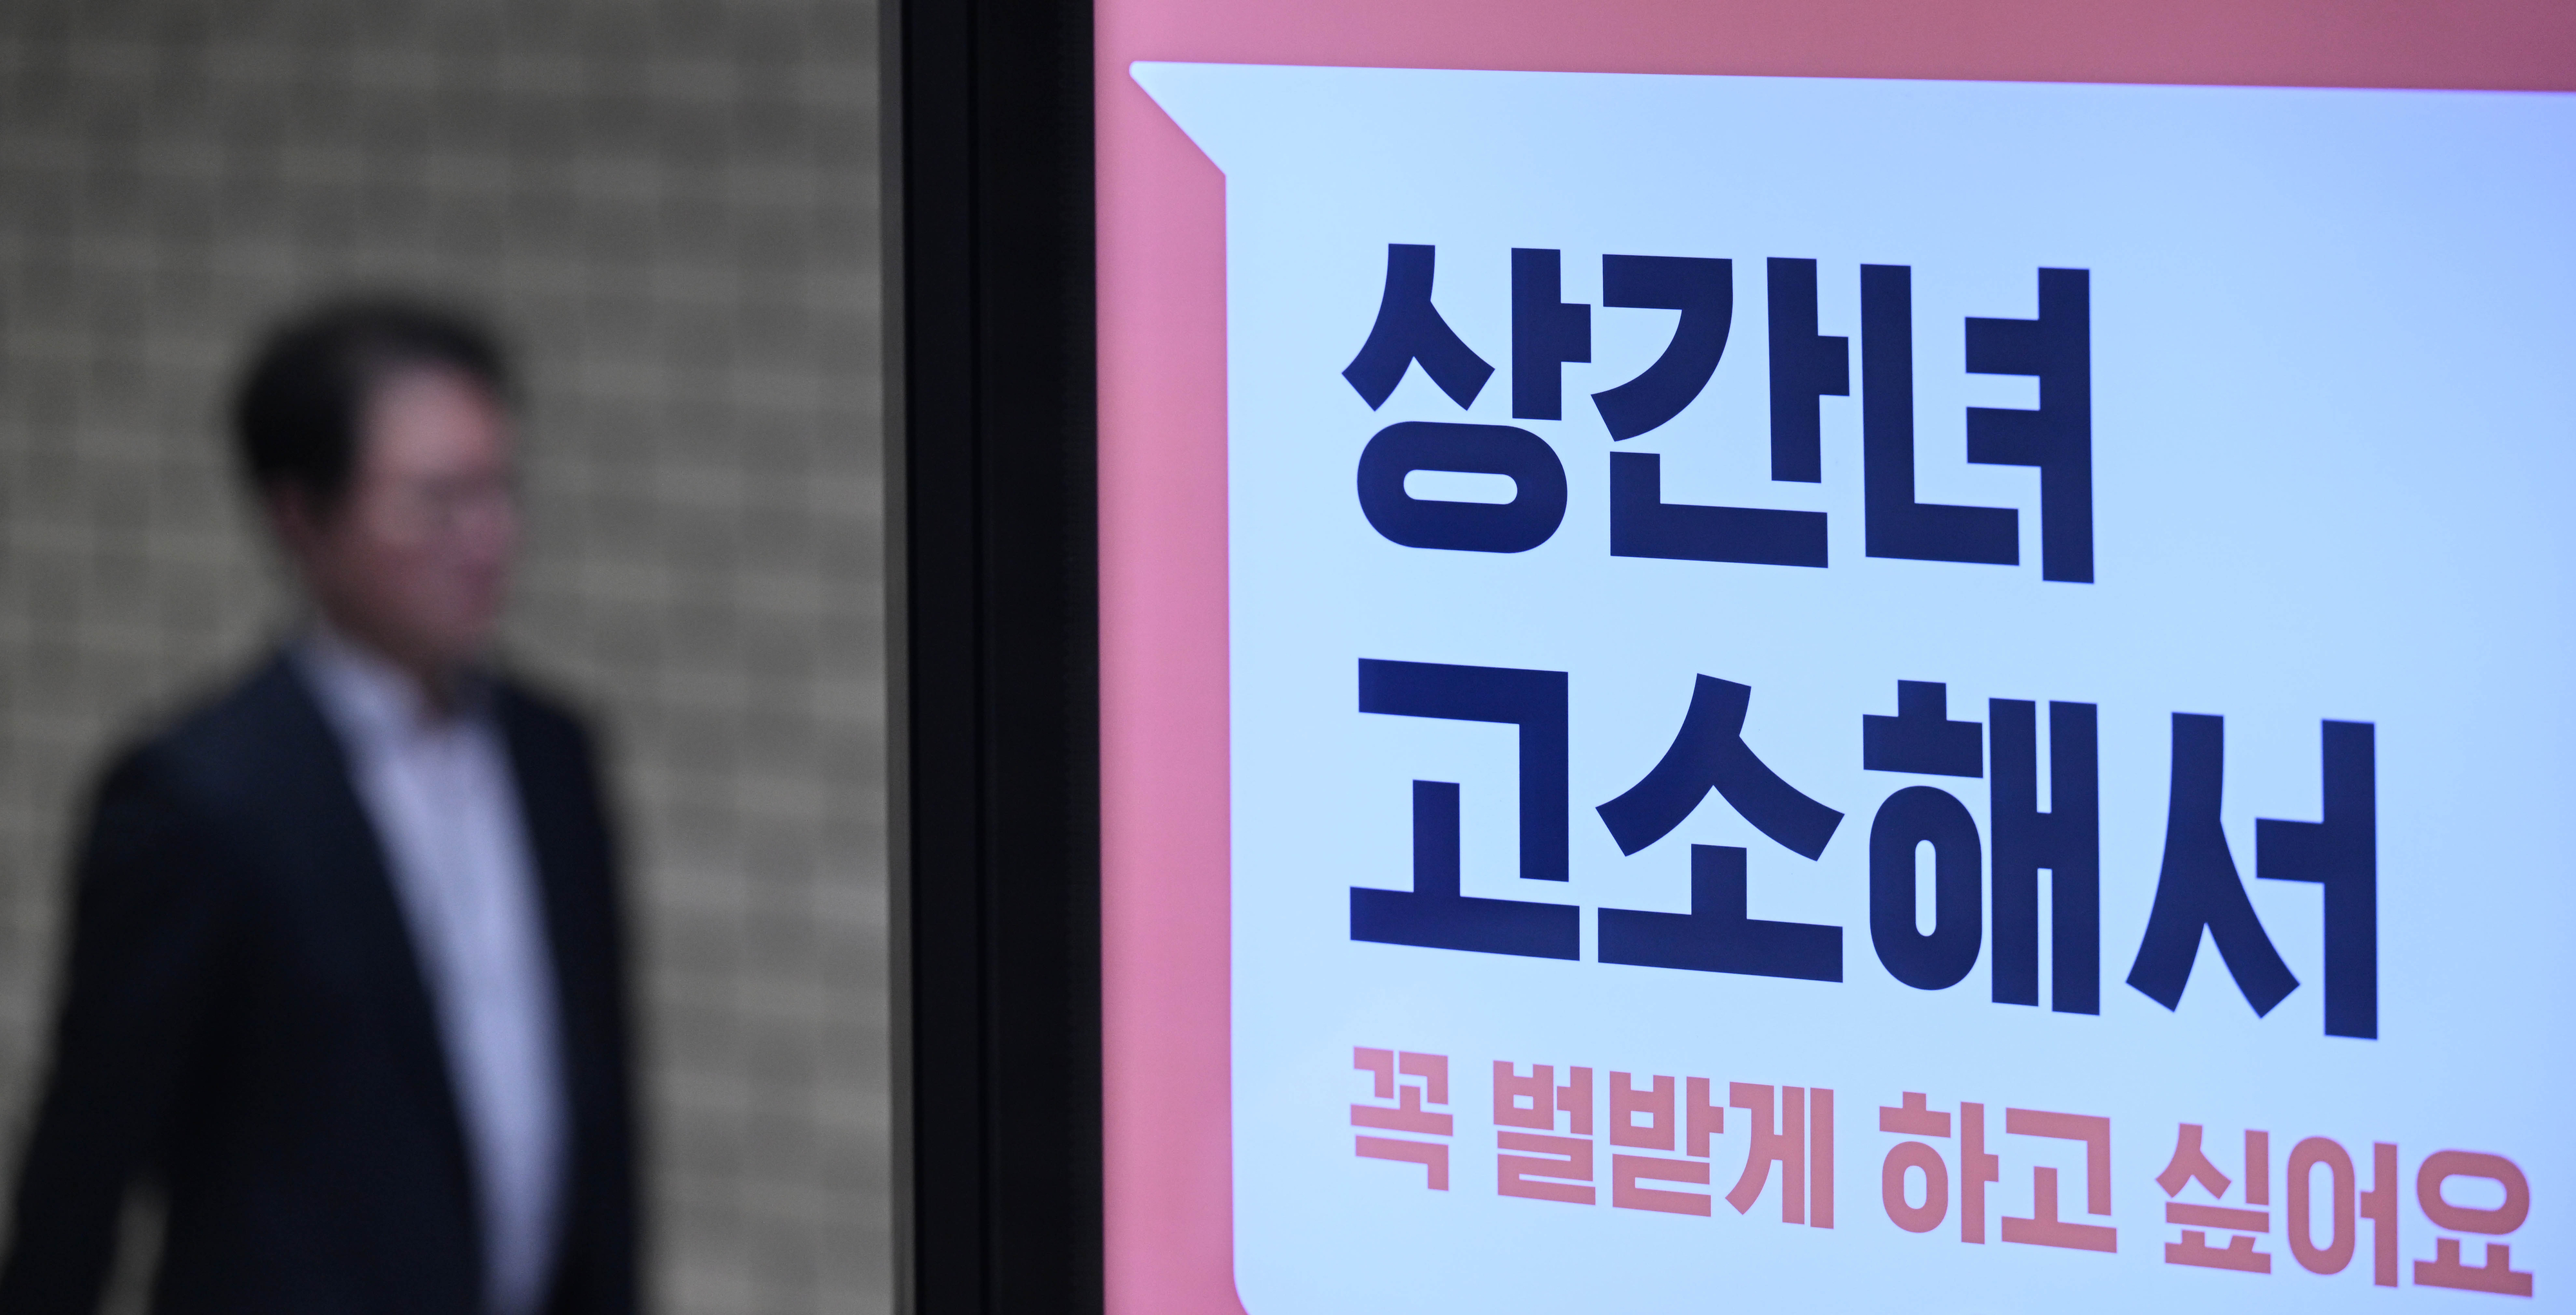 변호사업계 경쟁이 치열해지면서 자극적인 문구를 내세운 광고들이 논란이 되고 있는 가운데 서울의 한 전철역 광고판에 26일 ‘상간녀를 고소해서 벌받게 하고 싶다’는 내용의 변호사 광고가 게시돼 있다(사진은 기사에 등장하는 법무법인과는 무관). 홍윤기 기자